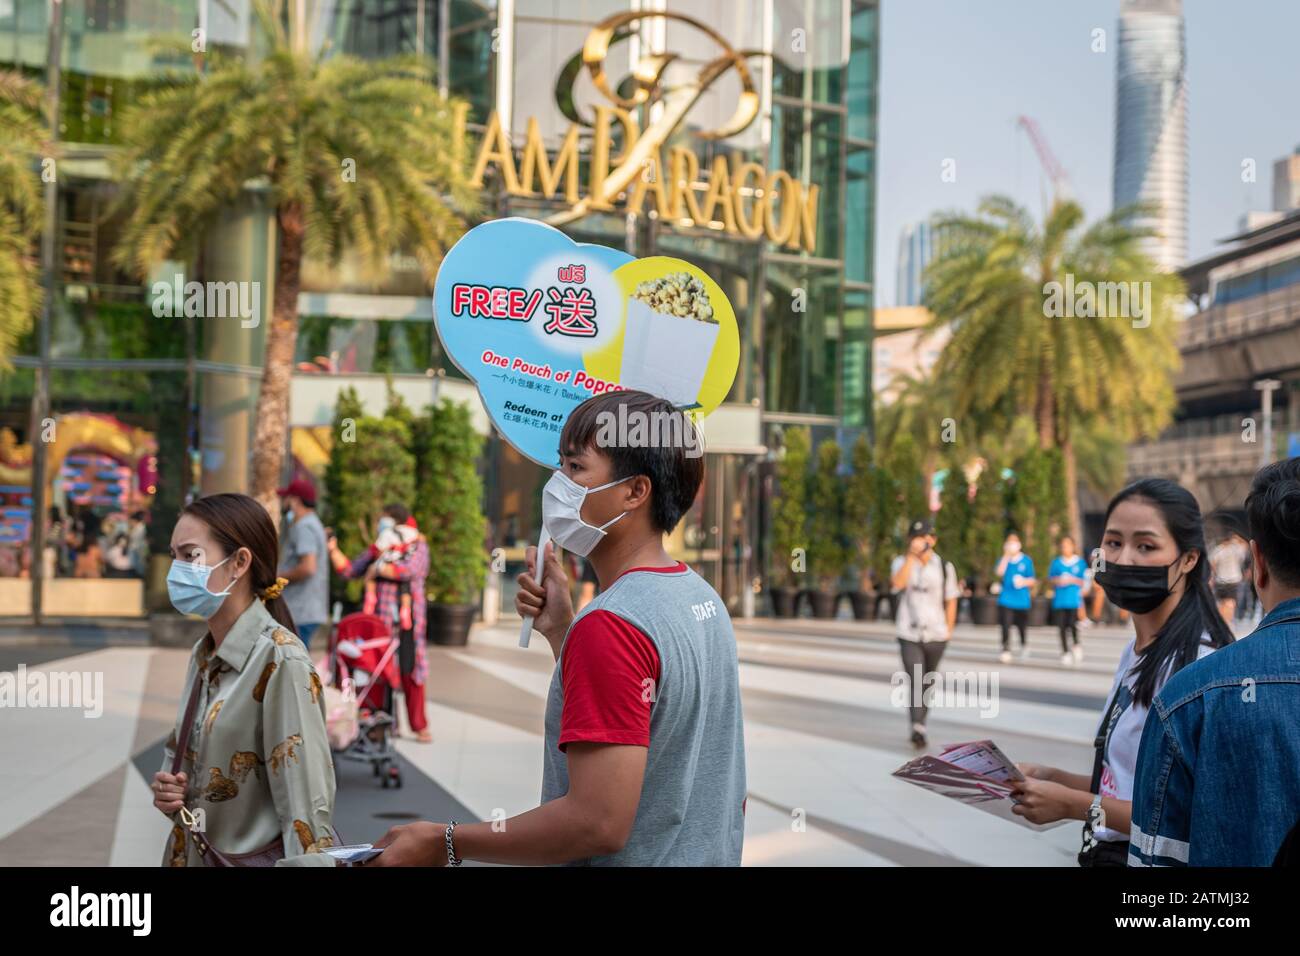 Popcorn vendor wear facemask as Coronavirus spreads, Bangkok, Thailand Stock Photo